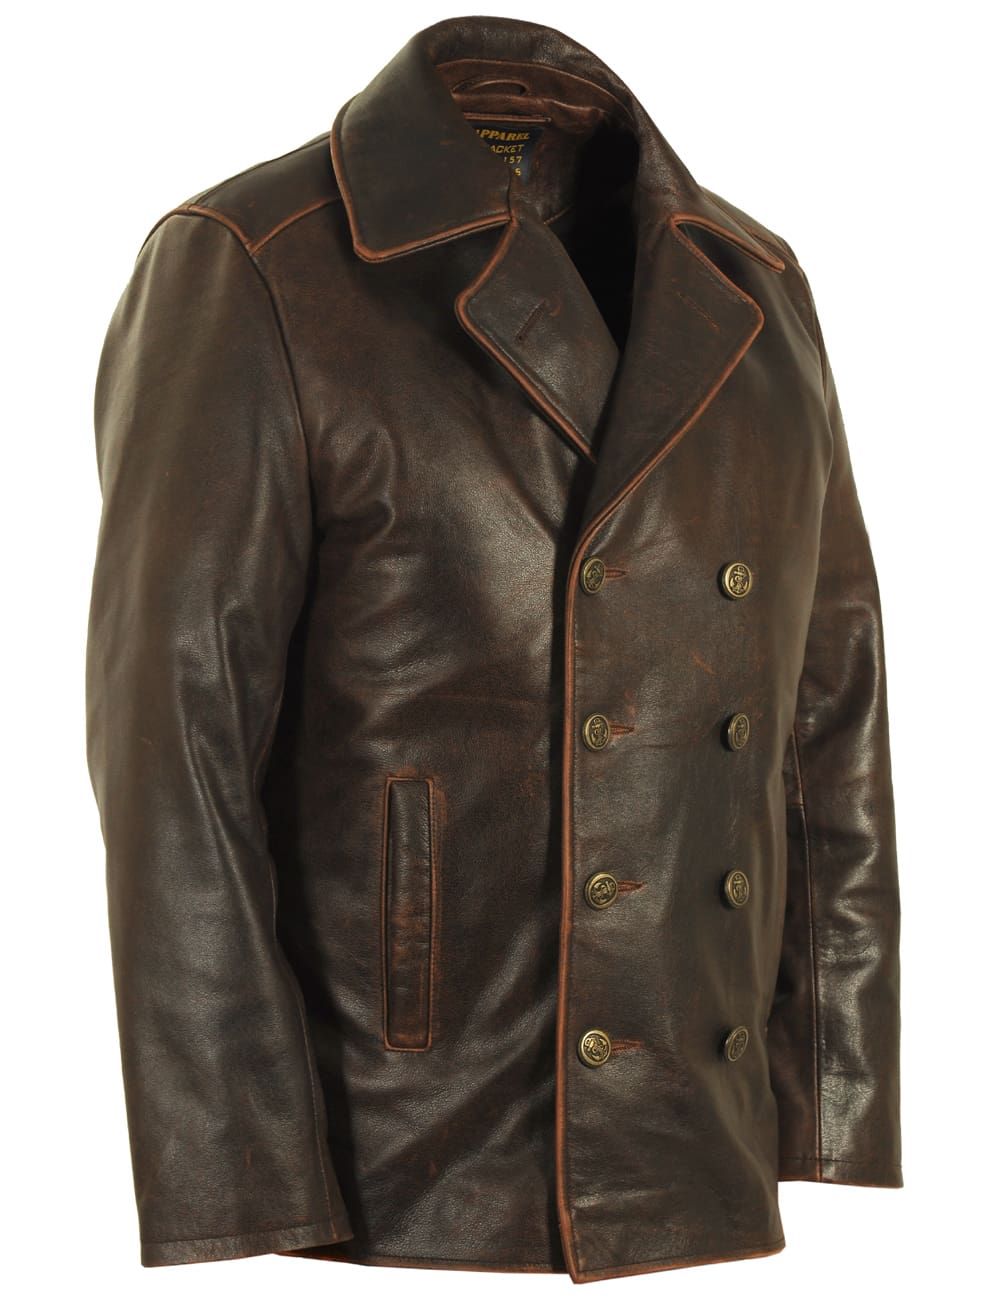 Stylish leather jackets for your wardrobe – Vintage Leder